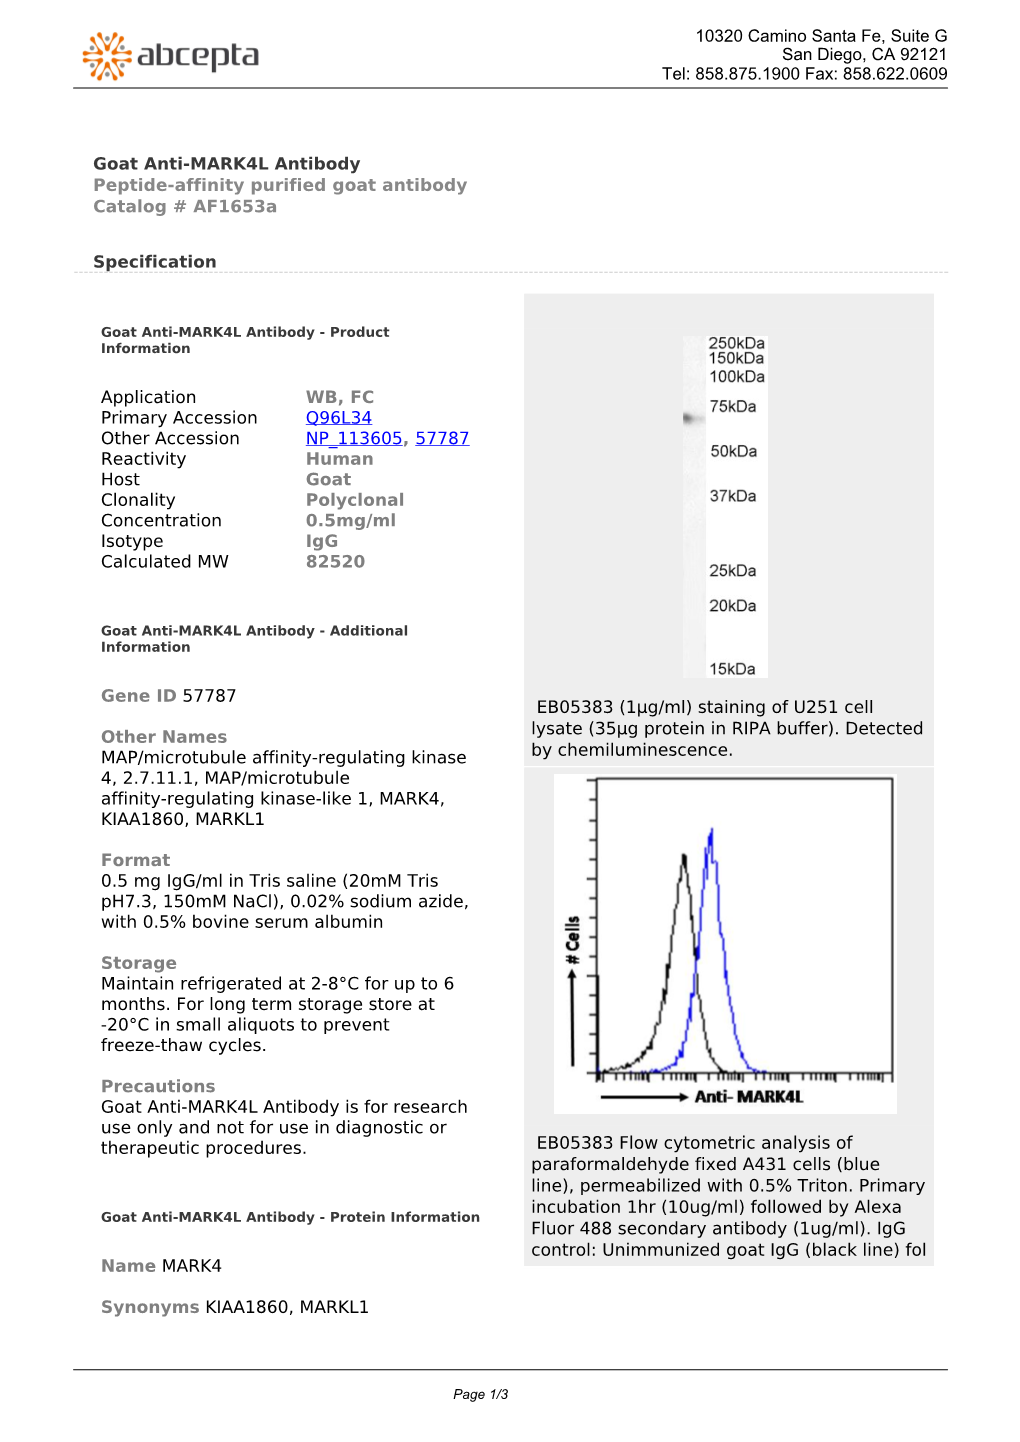 Goat Anti-MARK4L Antibody Peptide-Affinity Purified Goat Antibody Catalog # Af1653a